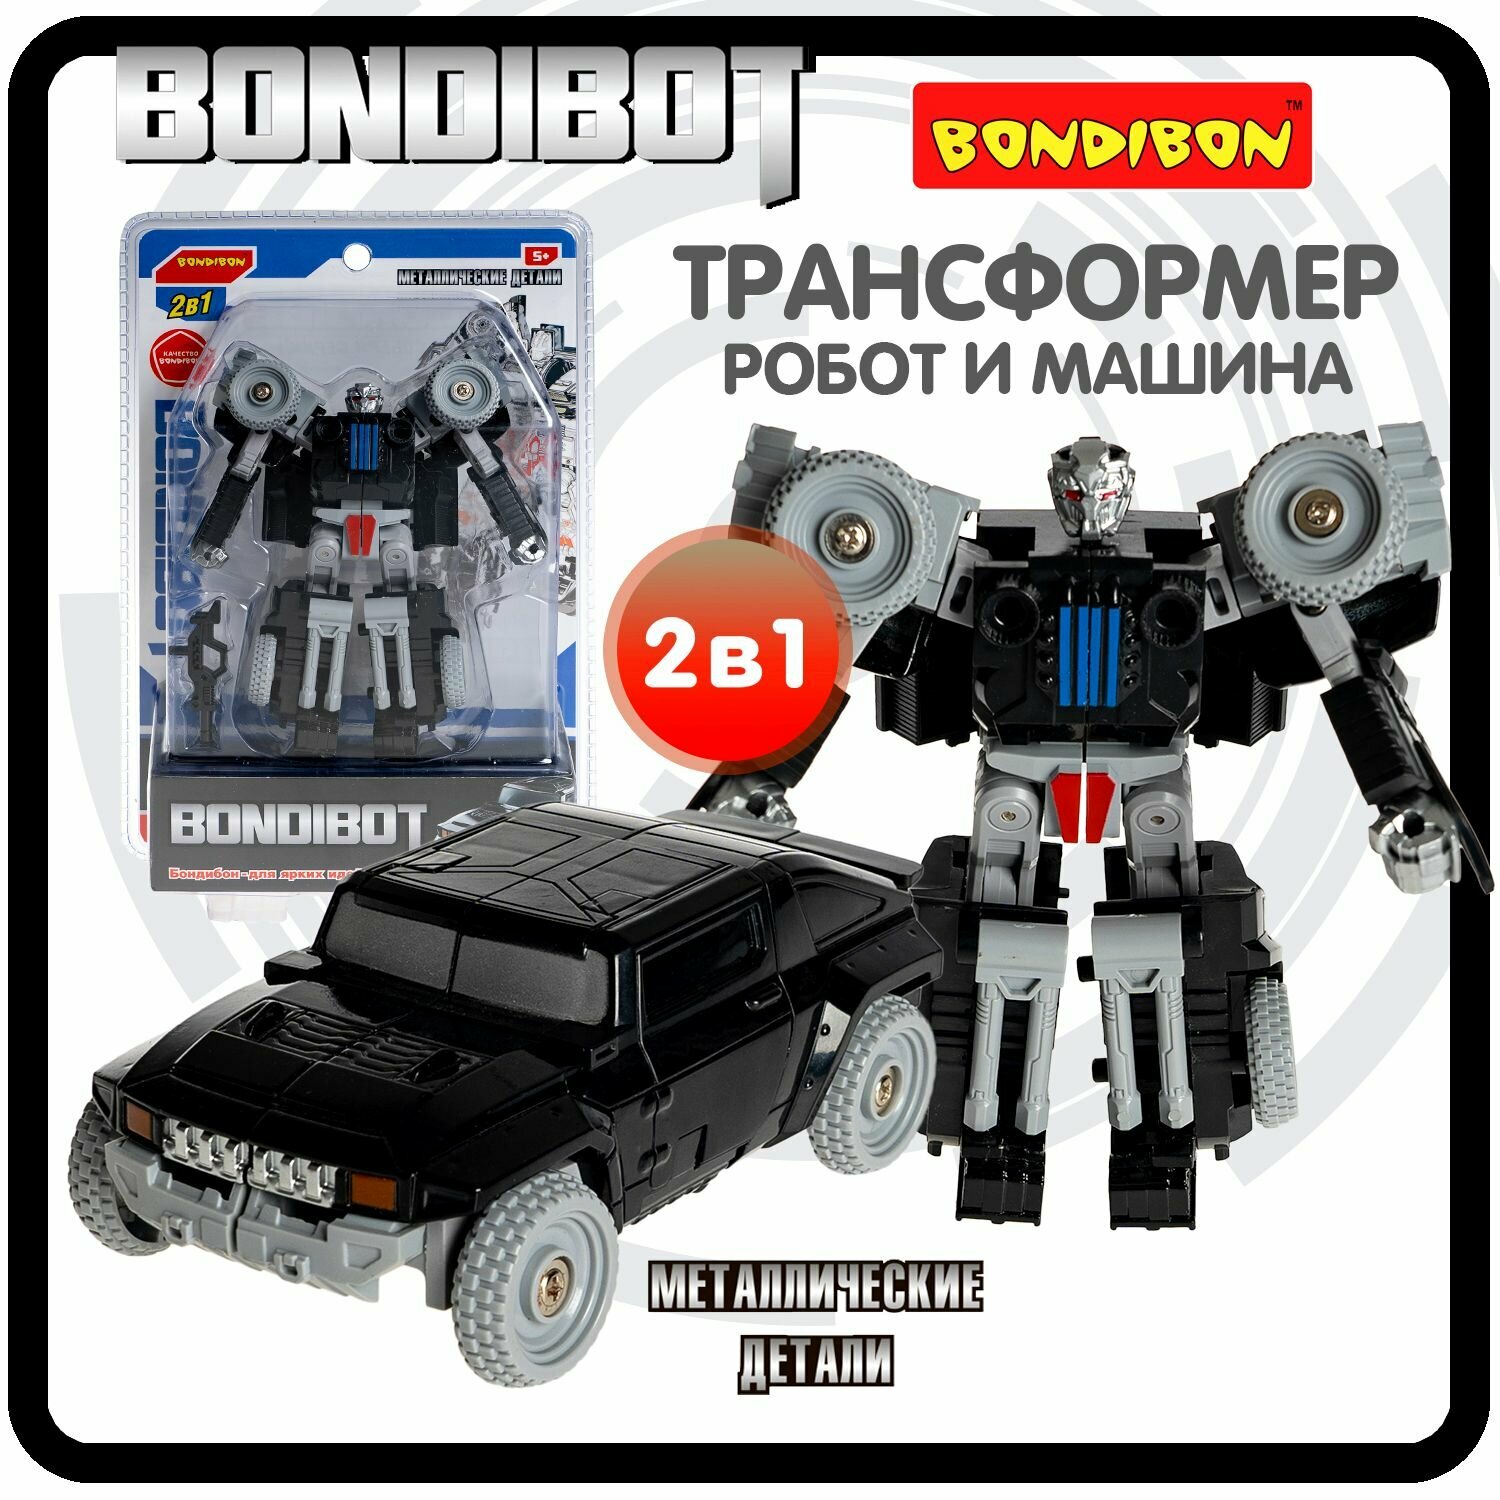 Трансформер робот-машина джип, метал. детали, 2в1 BONDIBOT Bondibon, цвет чёрный, CRD 13,5х19х6,7см